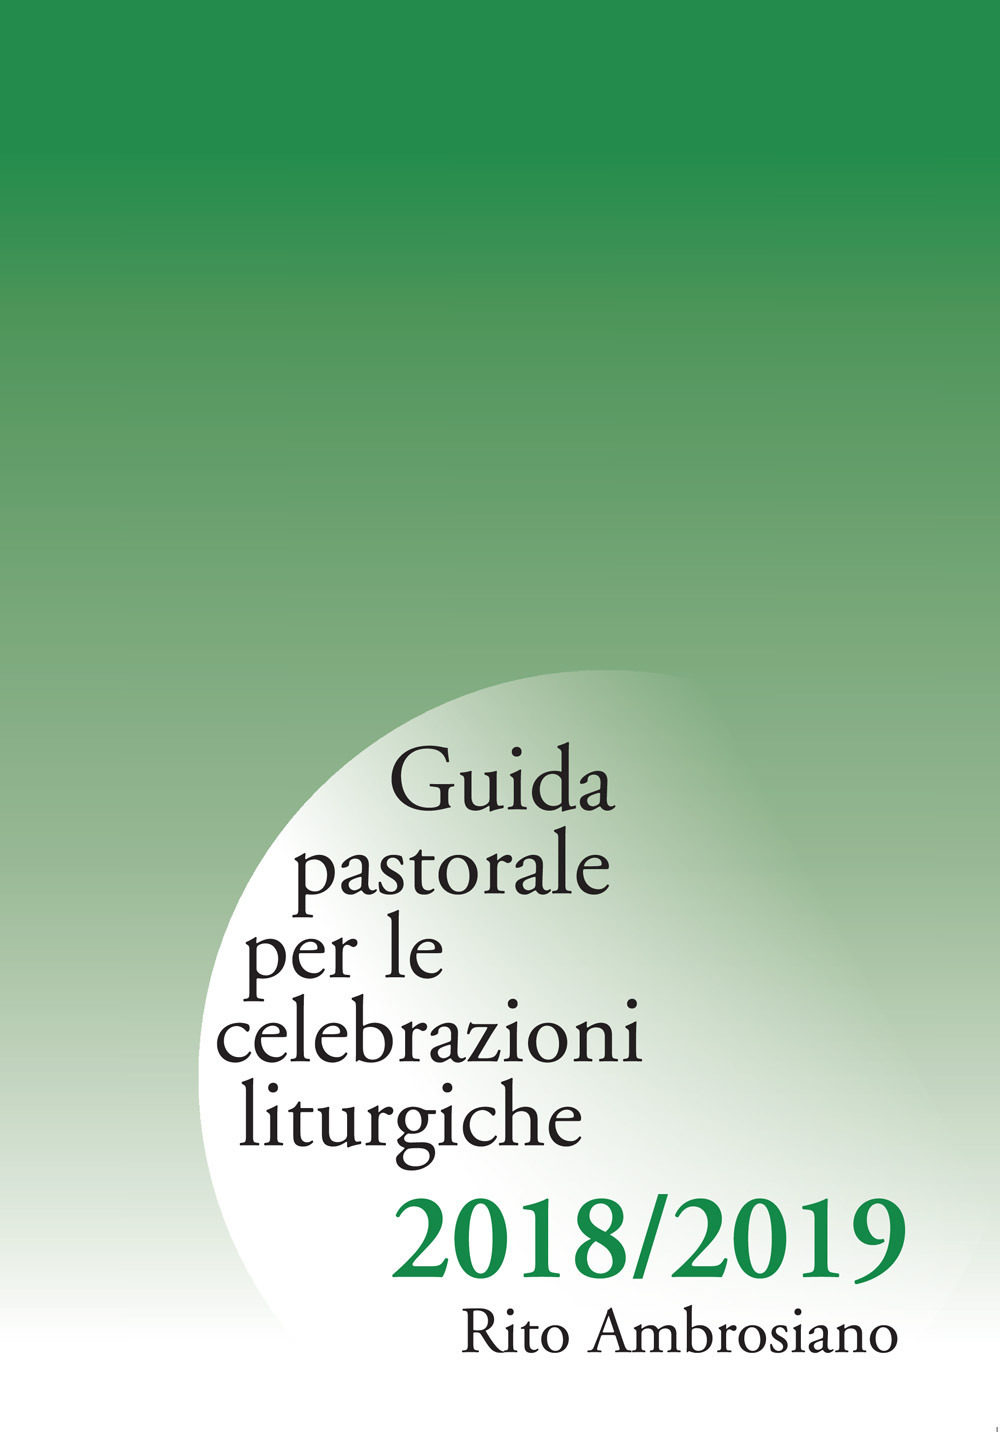 Guida pastorale per le celebrazioni liturgiche 2018/2019. Rito ambrosiano